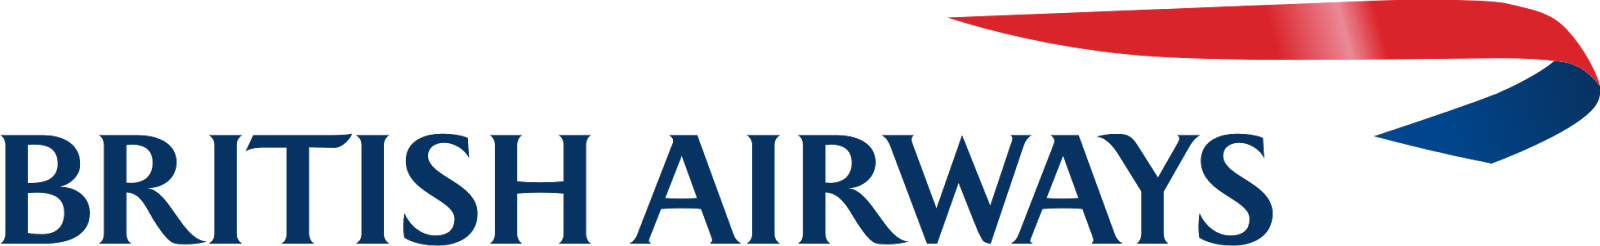 British Airways Logo - Free vector CDR - Logo Lambang Indonesia